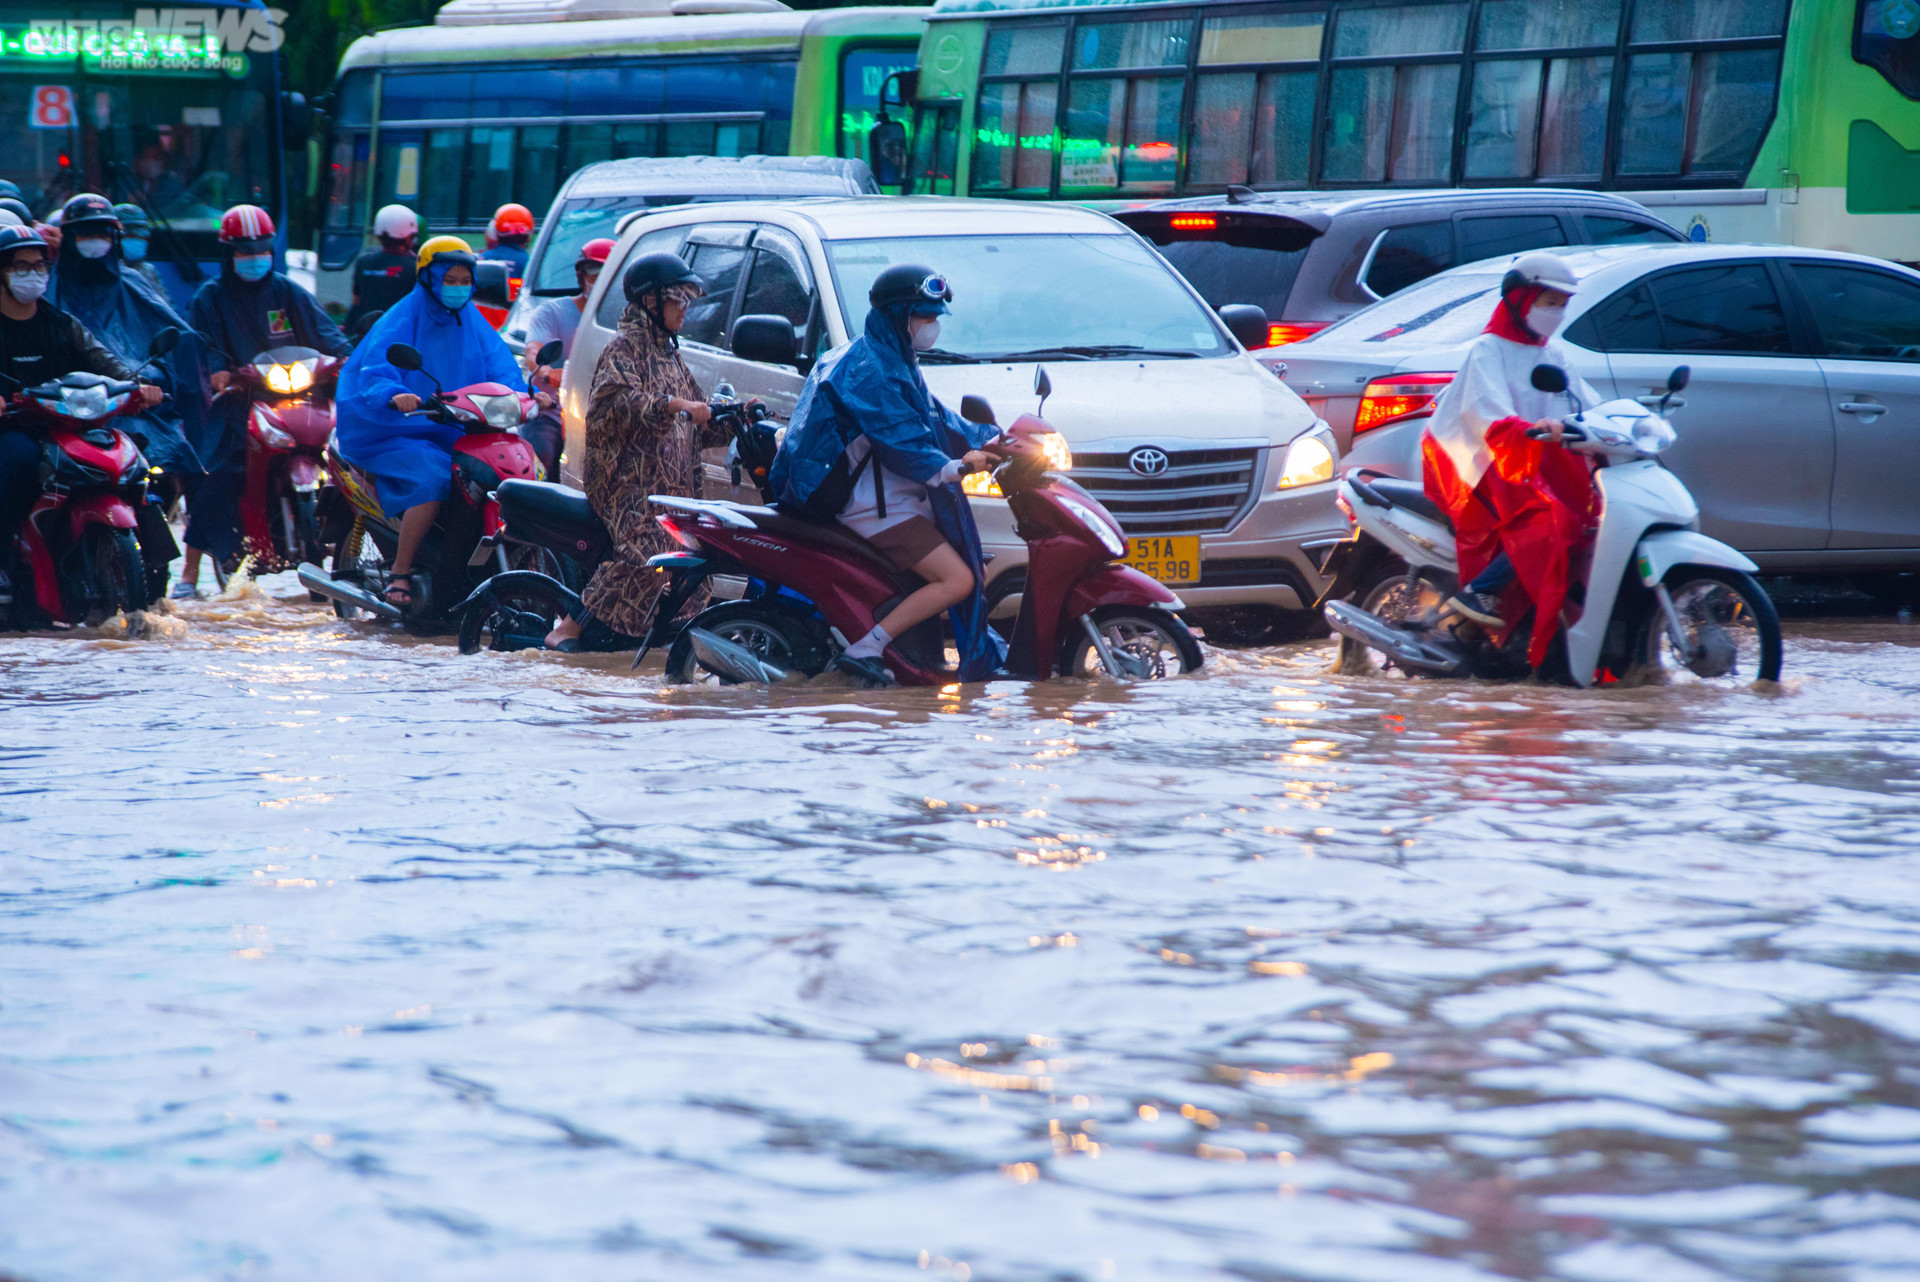 Người dân TP.HCM bì bõm lội nước về nhà sau cơn mưa lớn kéo dài hàng giờ - 5